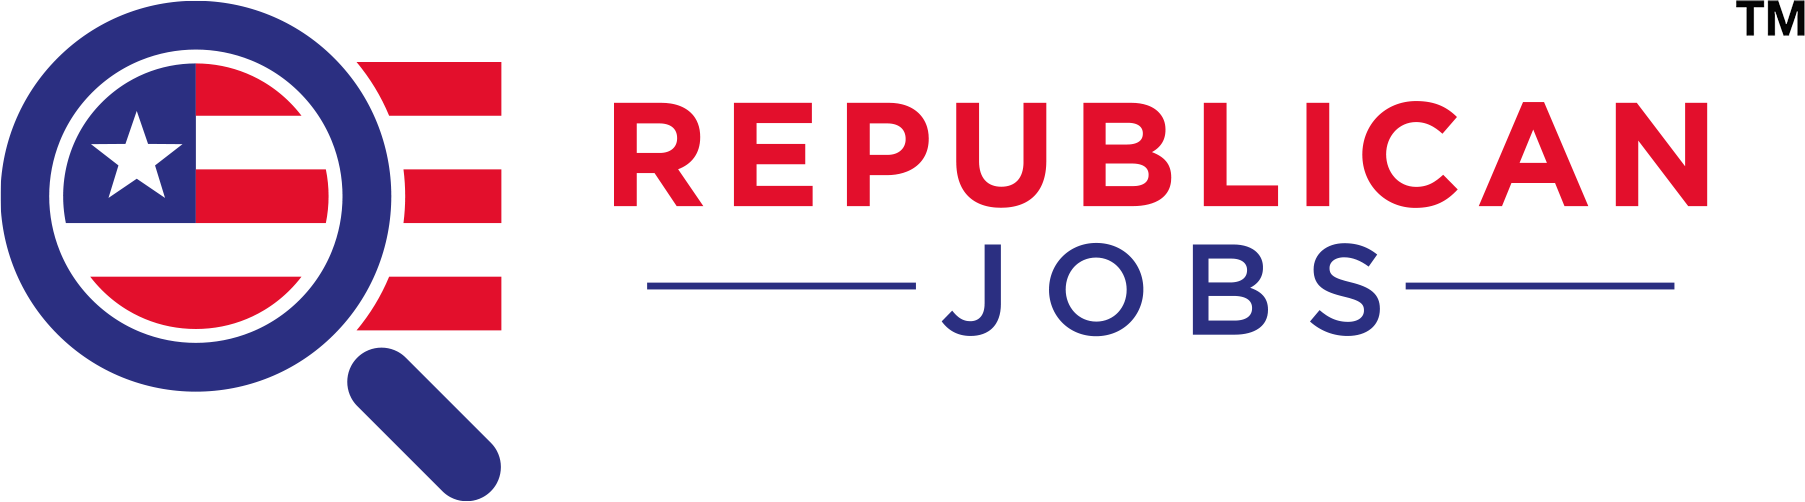 Republican jobs in Walnut Creek California jobs